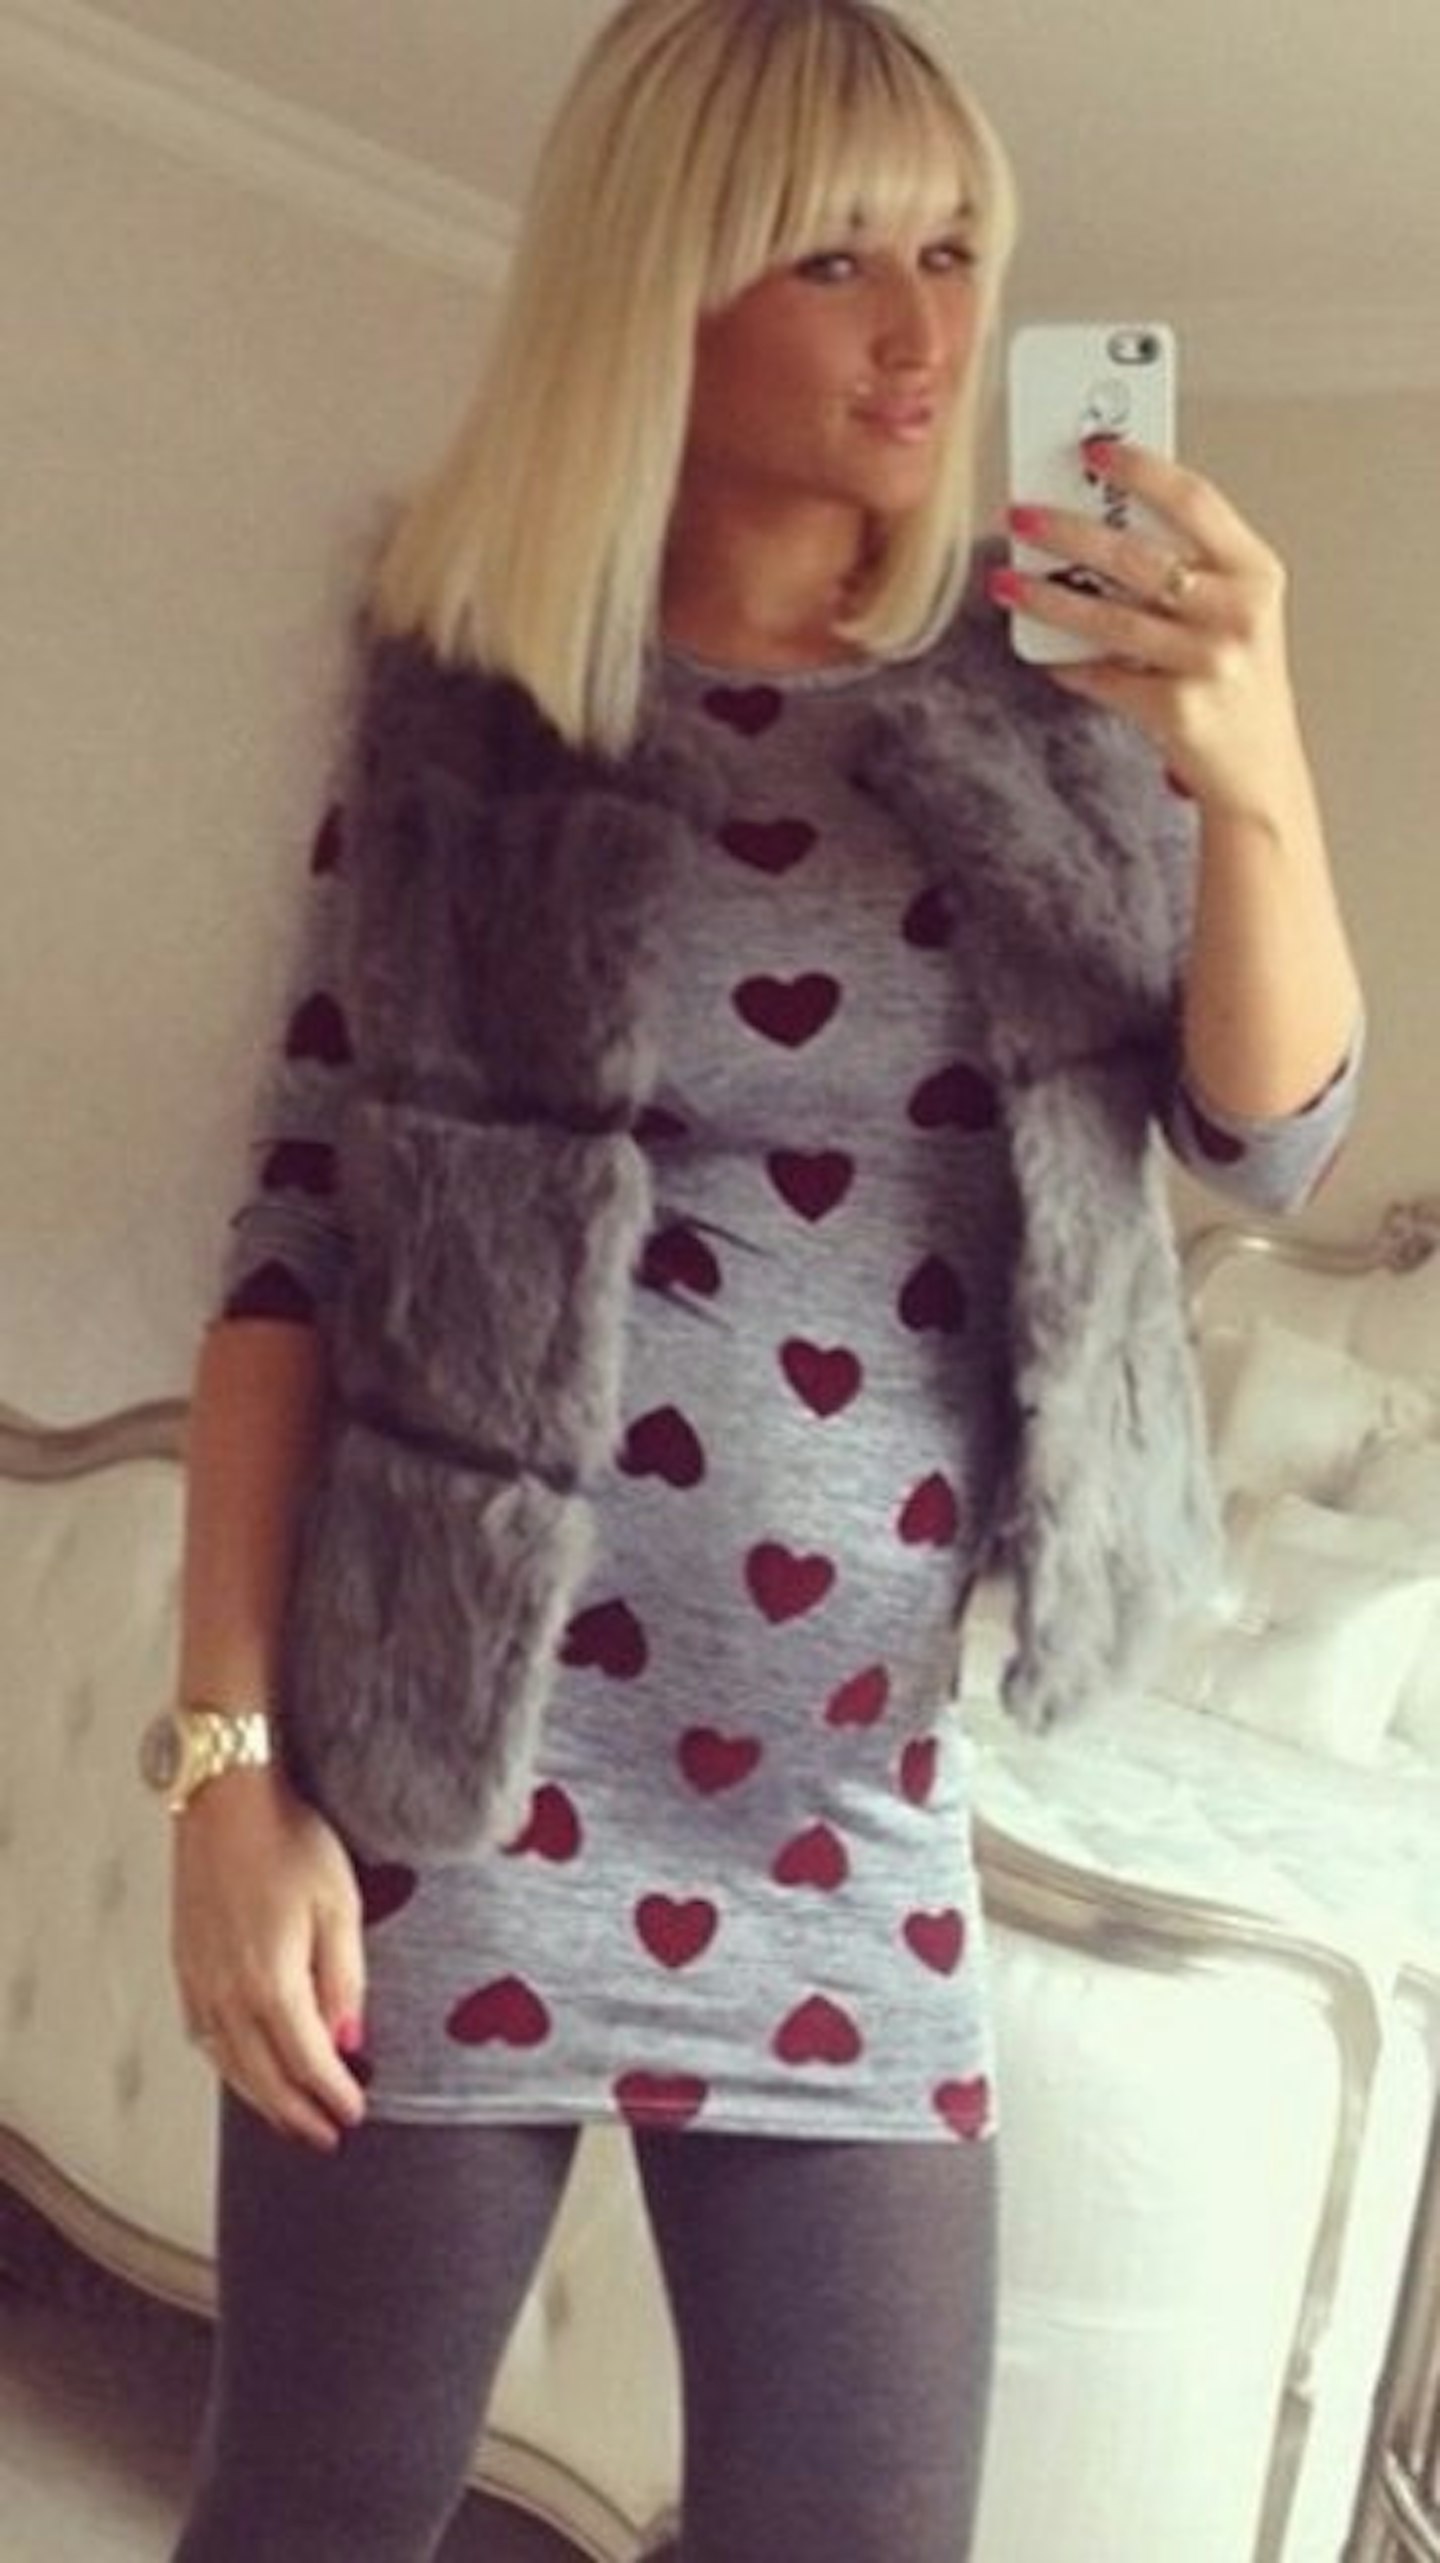 TOWIE's Billie Faiers flaunts her baby bump in a racy underwear selfie on  Instagram